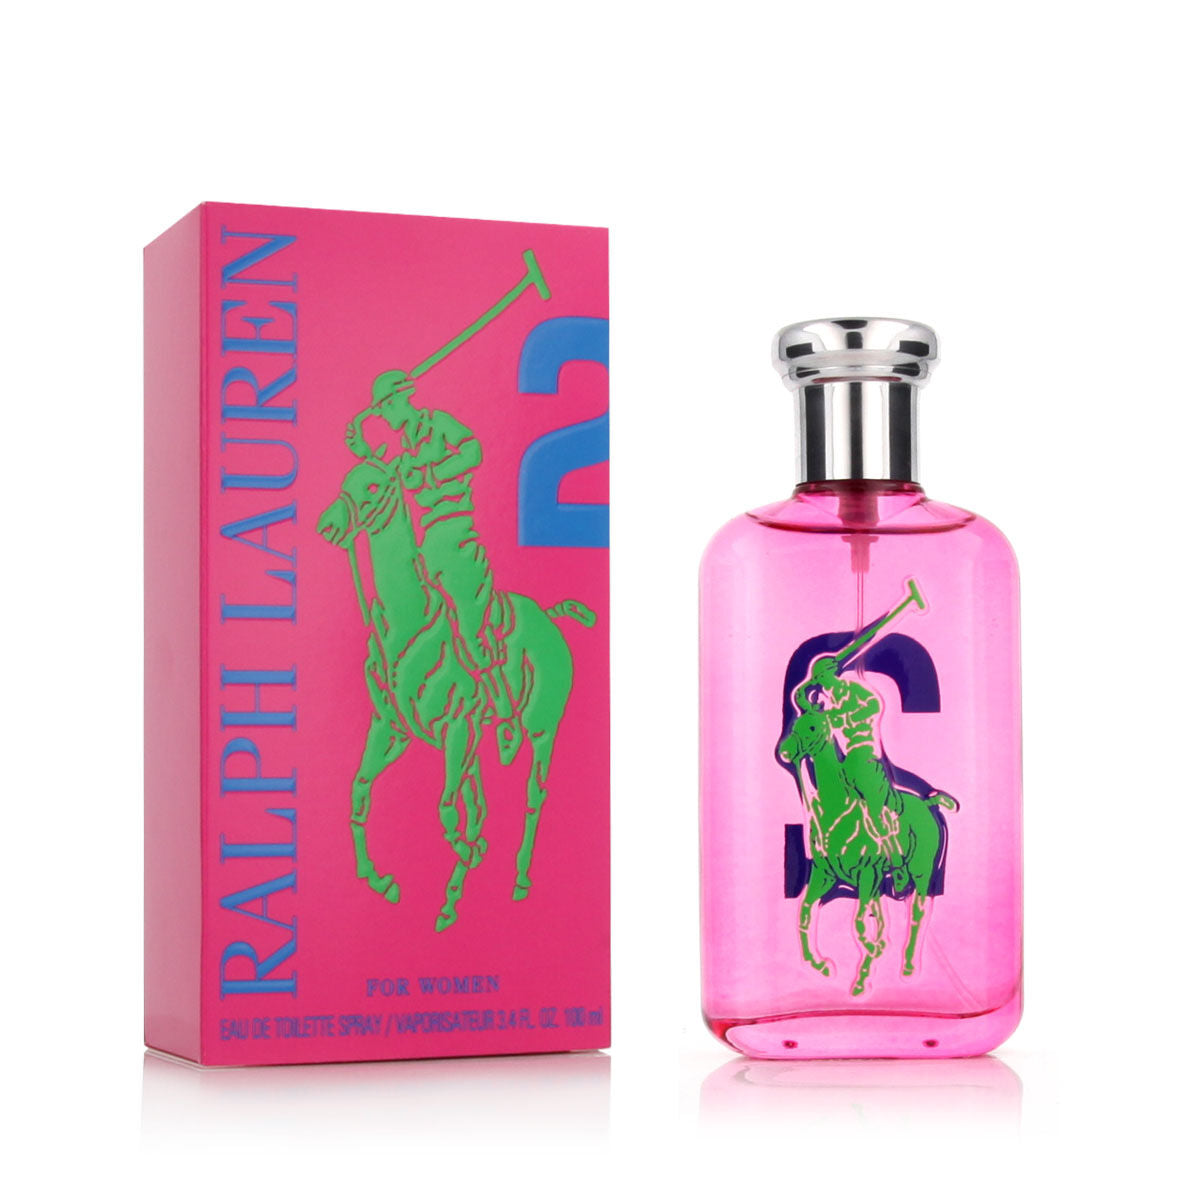 Parfum Femme Ralph Lauren Big Pony 2 for Women EDT 100 ml